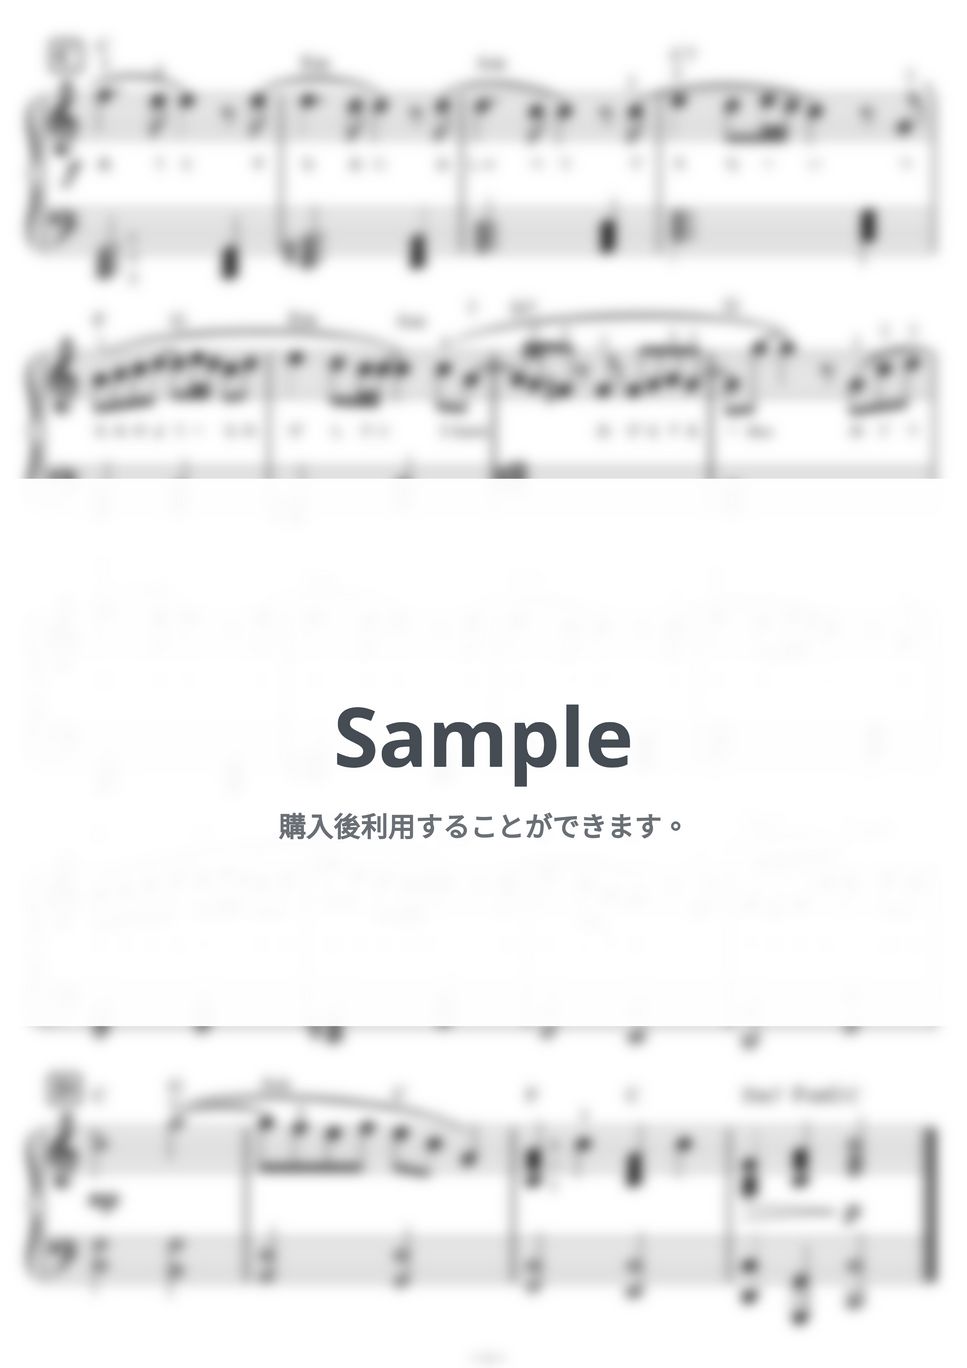 サザンオールスターズ - 【初級】TSUNAMI(ハ長調)サザンオールスターズ by ピアノの先生の楽譜集